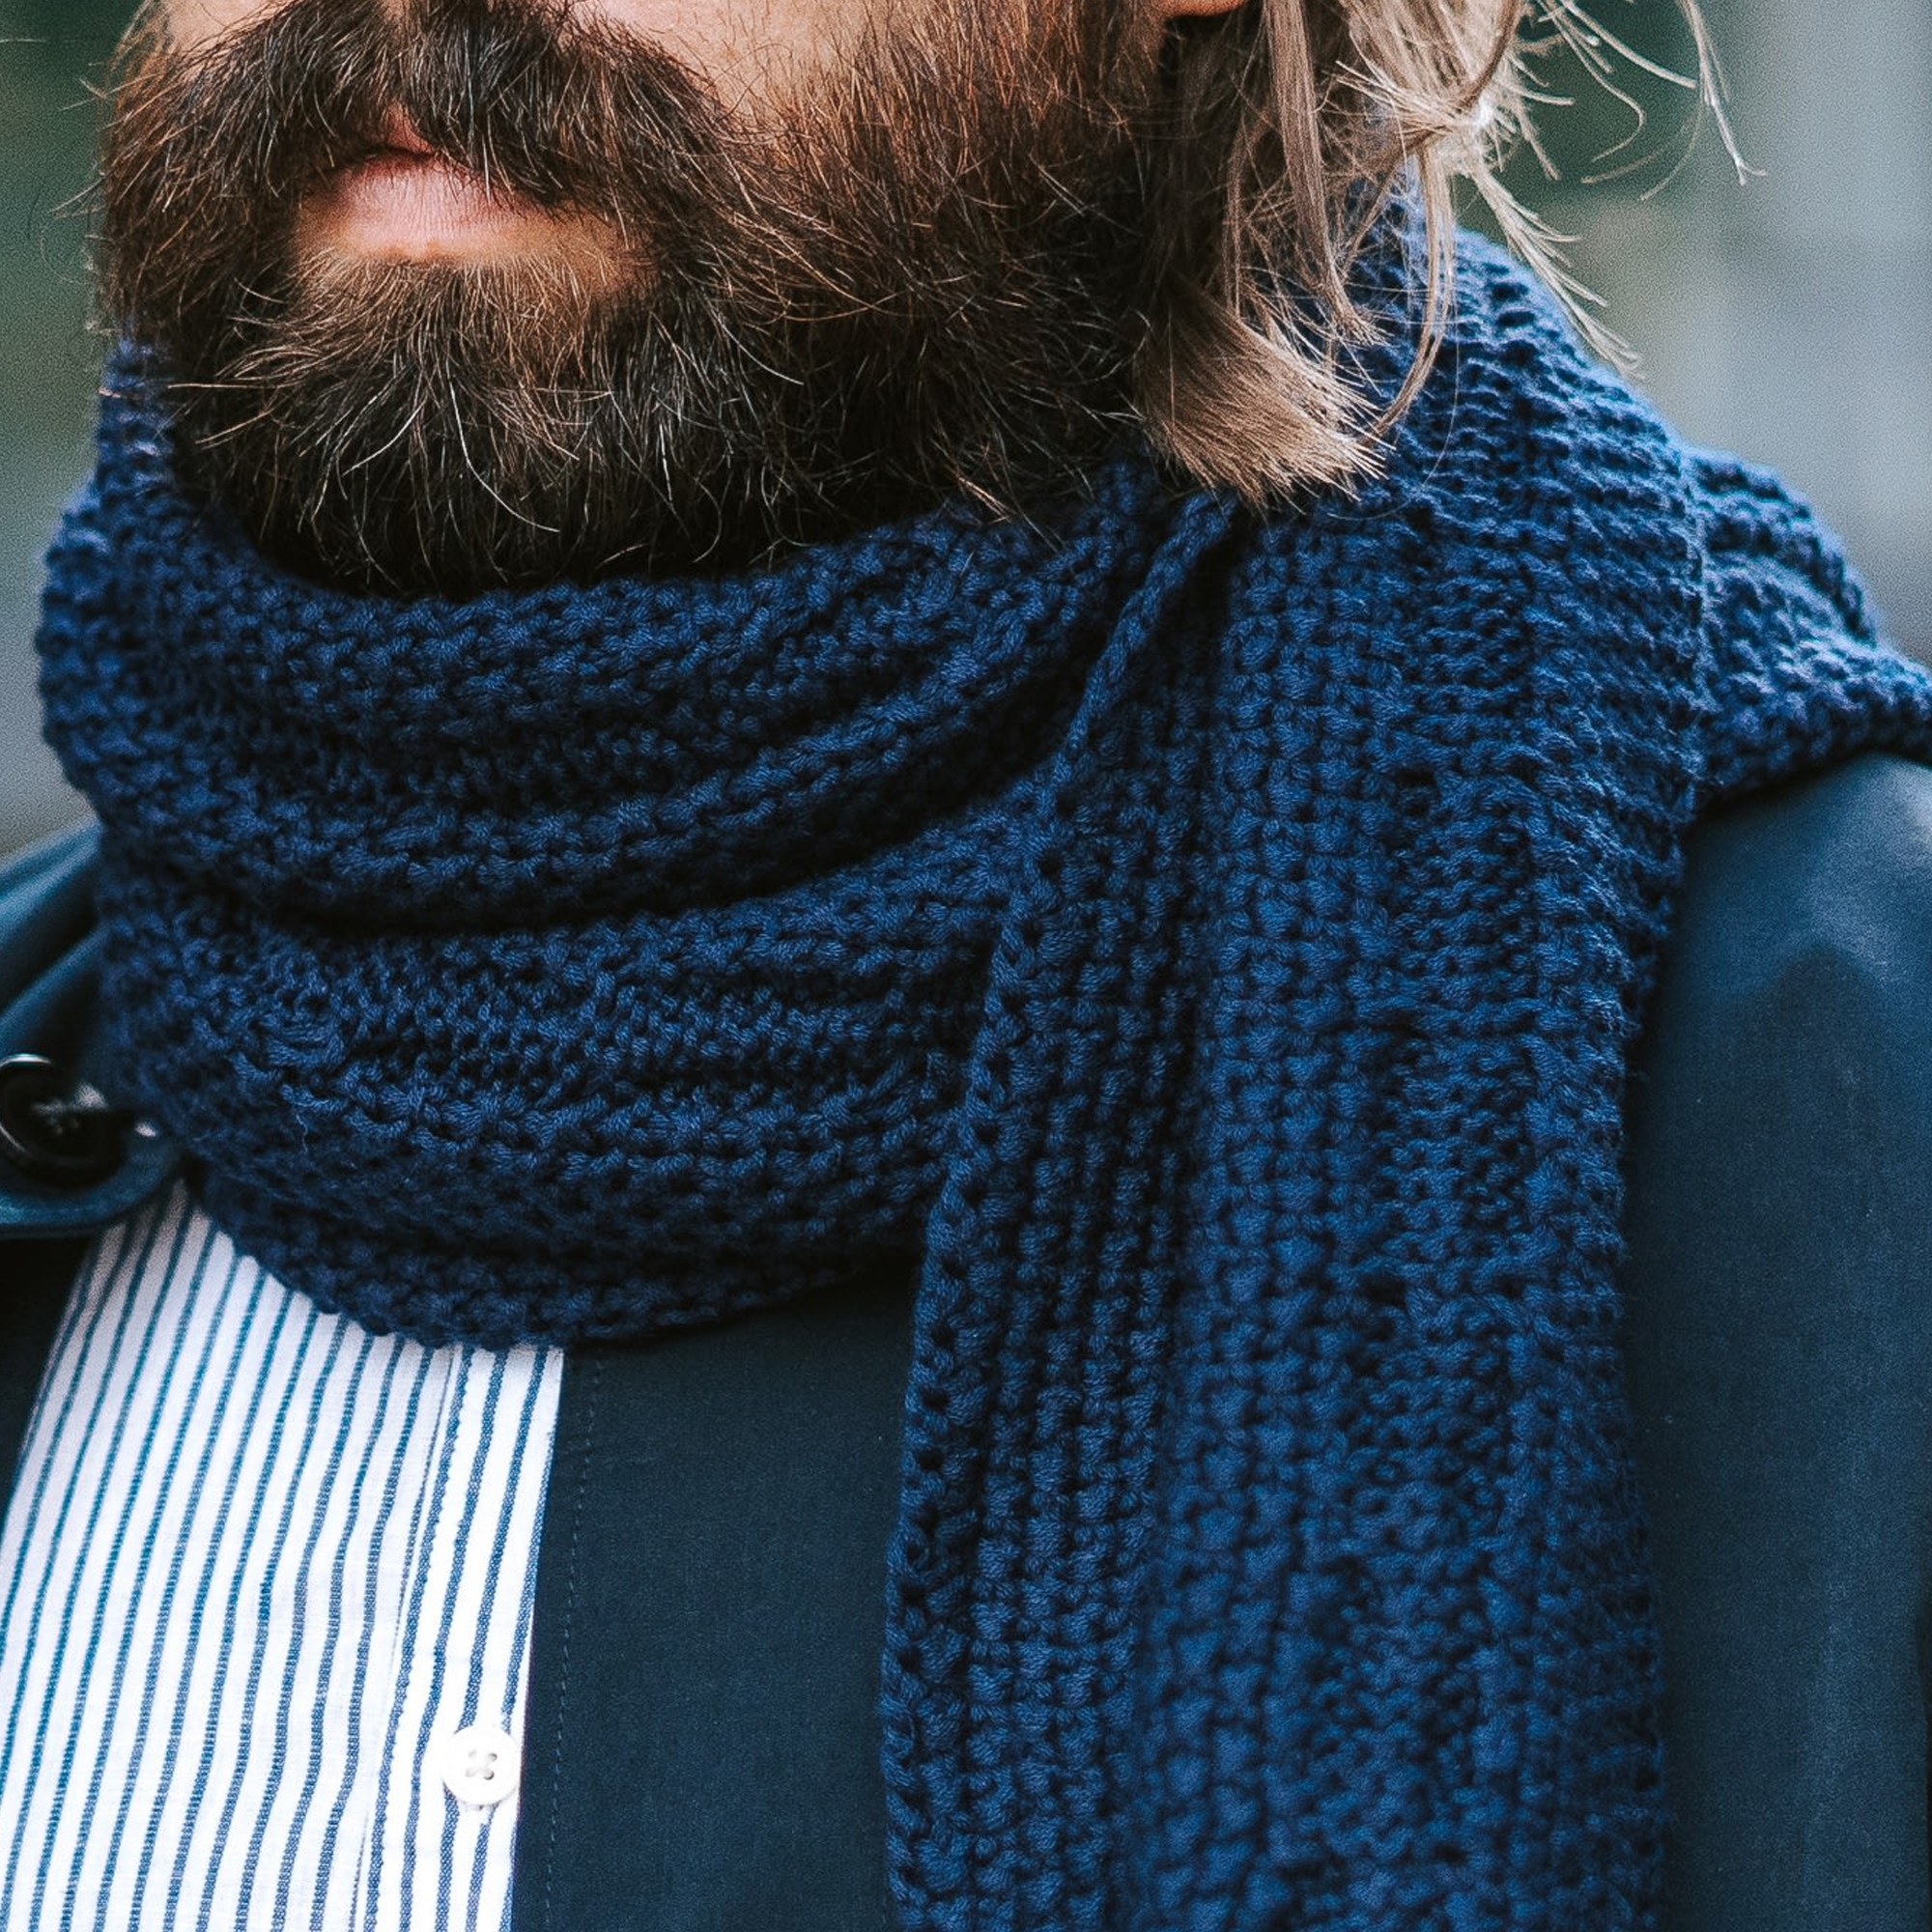 8 ting alle bør om halstørklæder